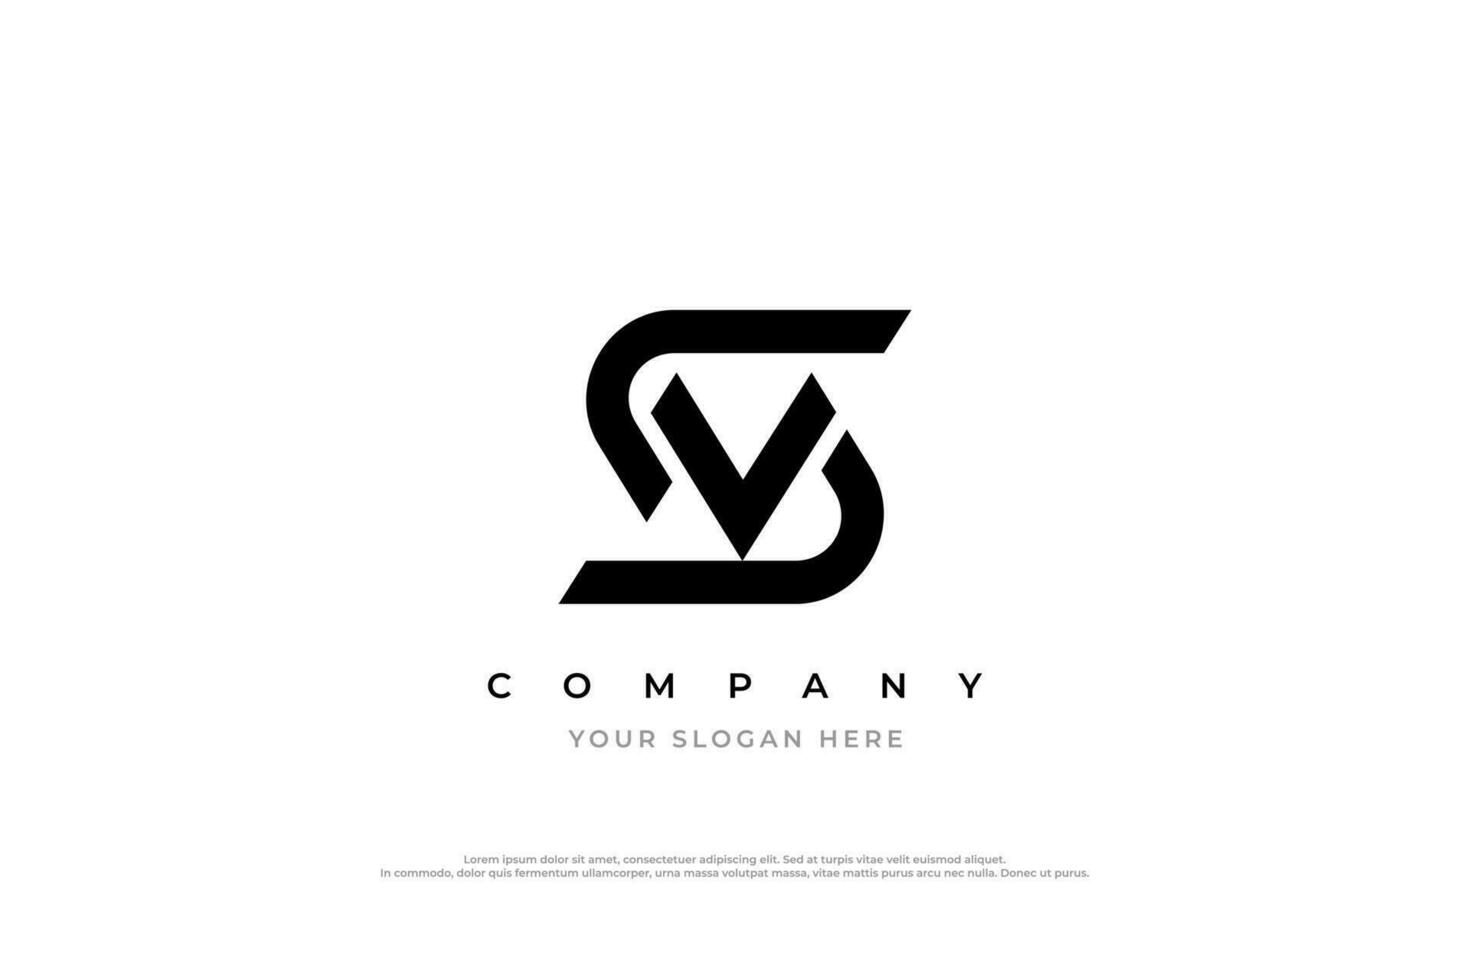 Letter VS Logo or SV Monogram Logo Design vector